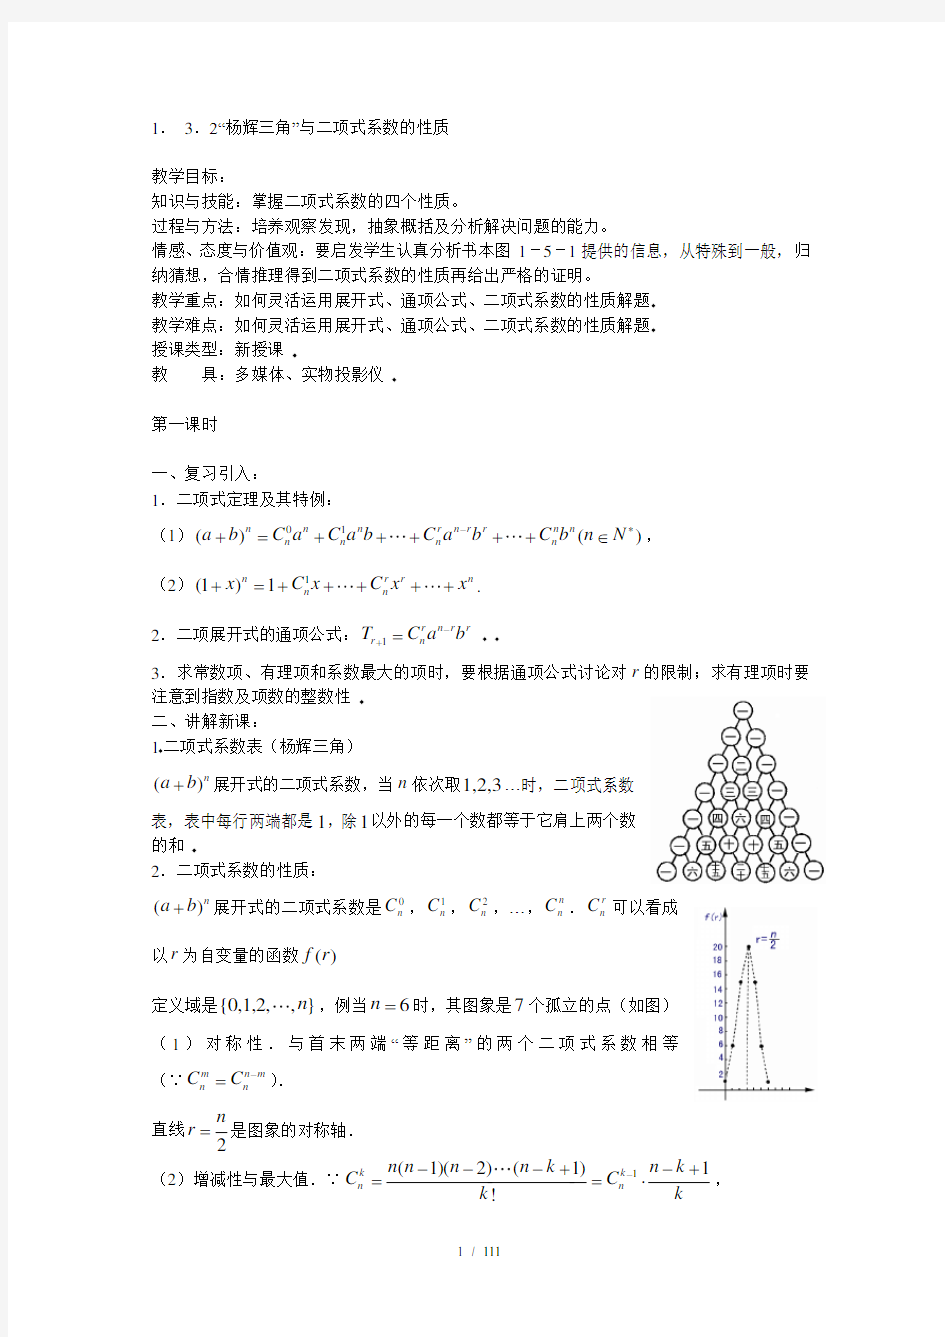 杨辉三角与二项式系数的性质(教案)